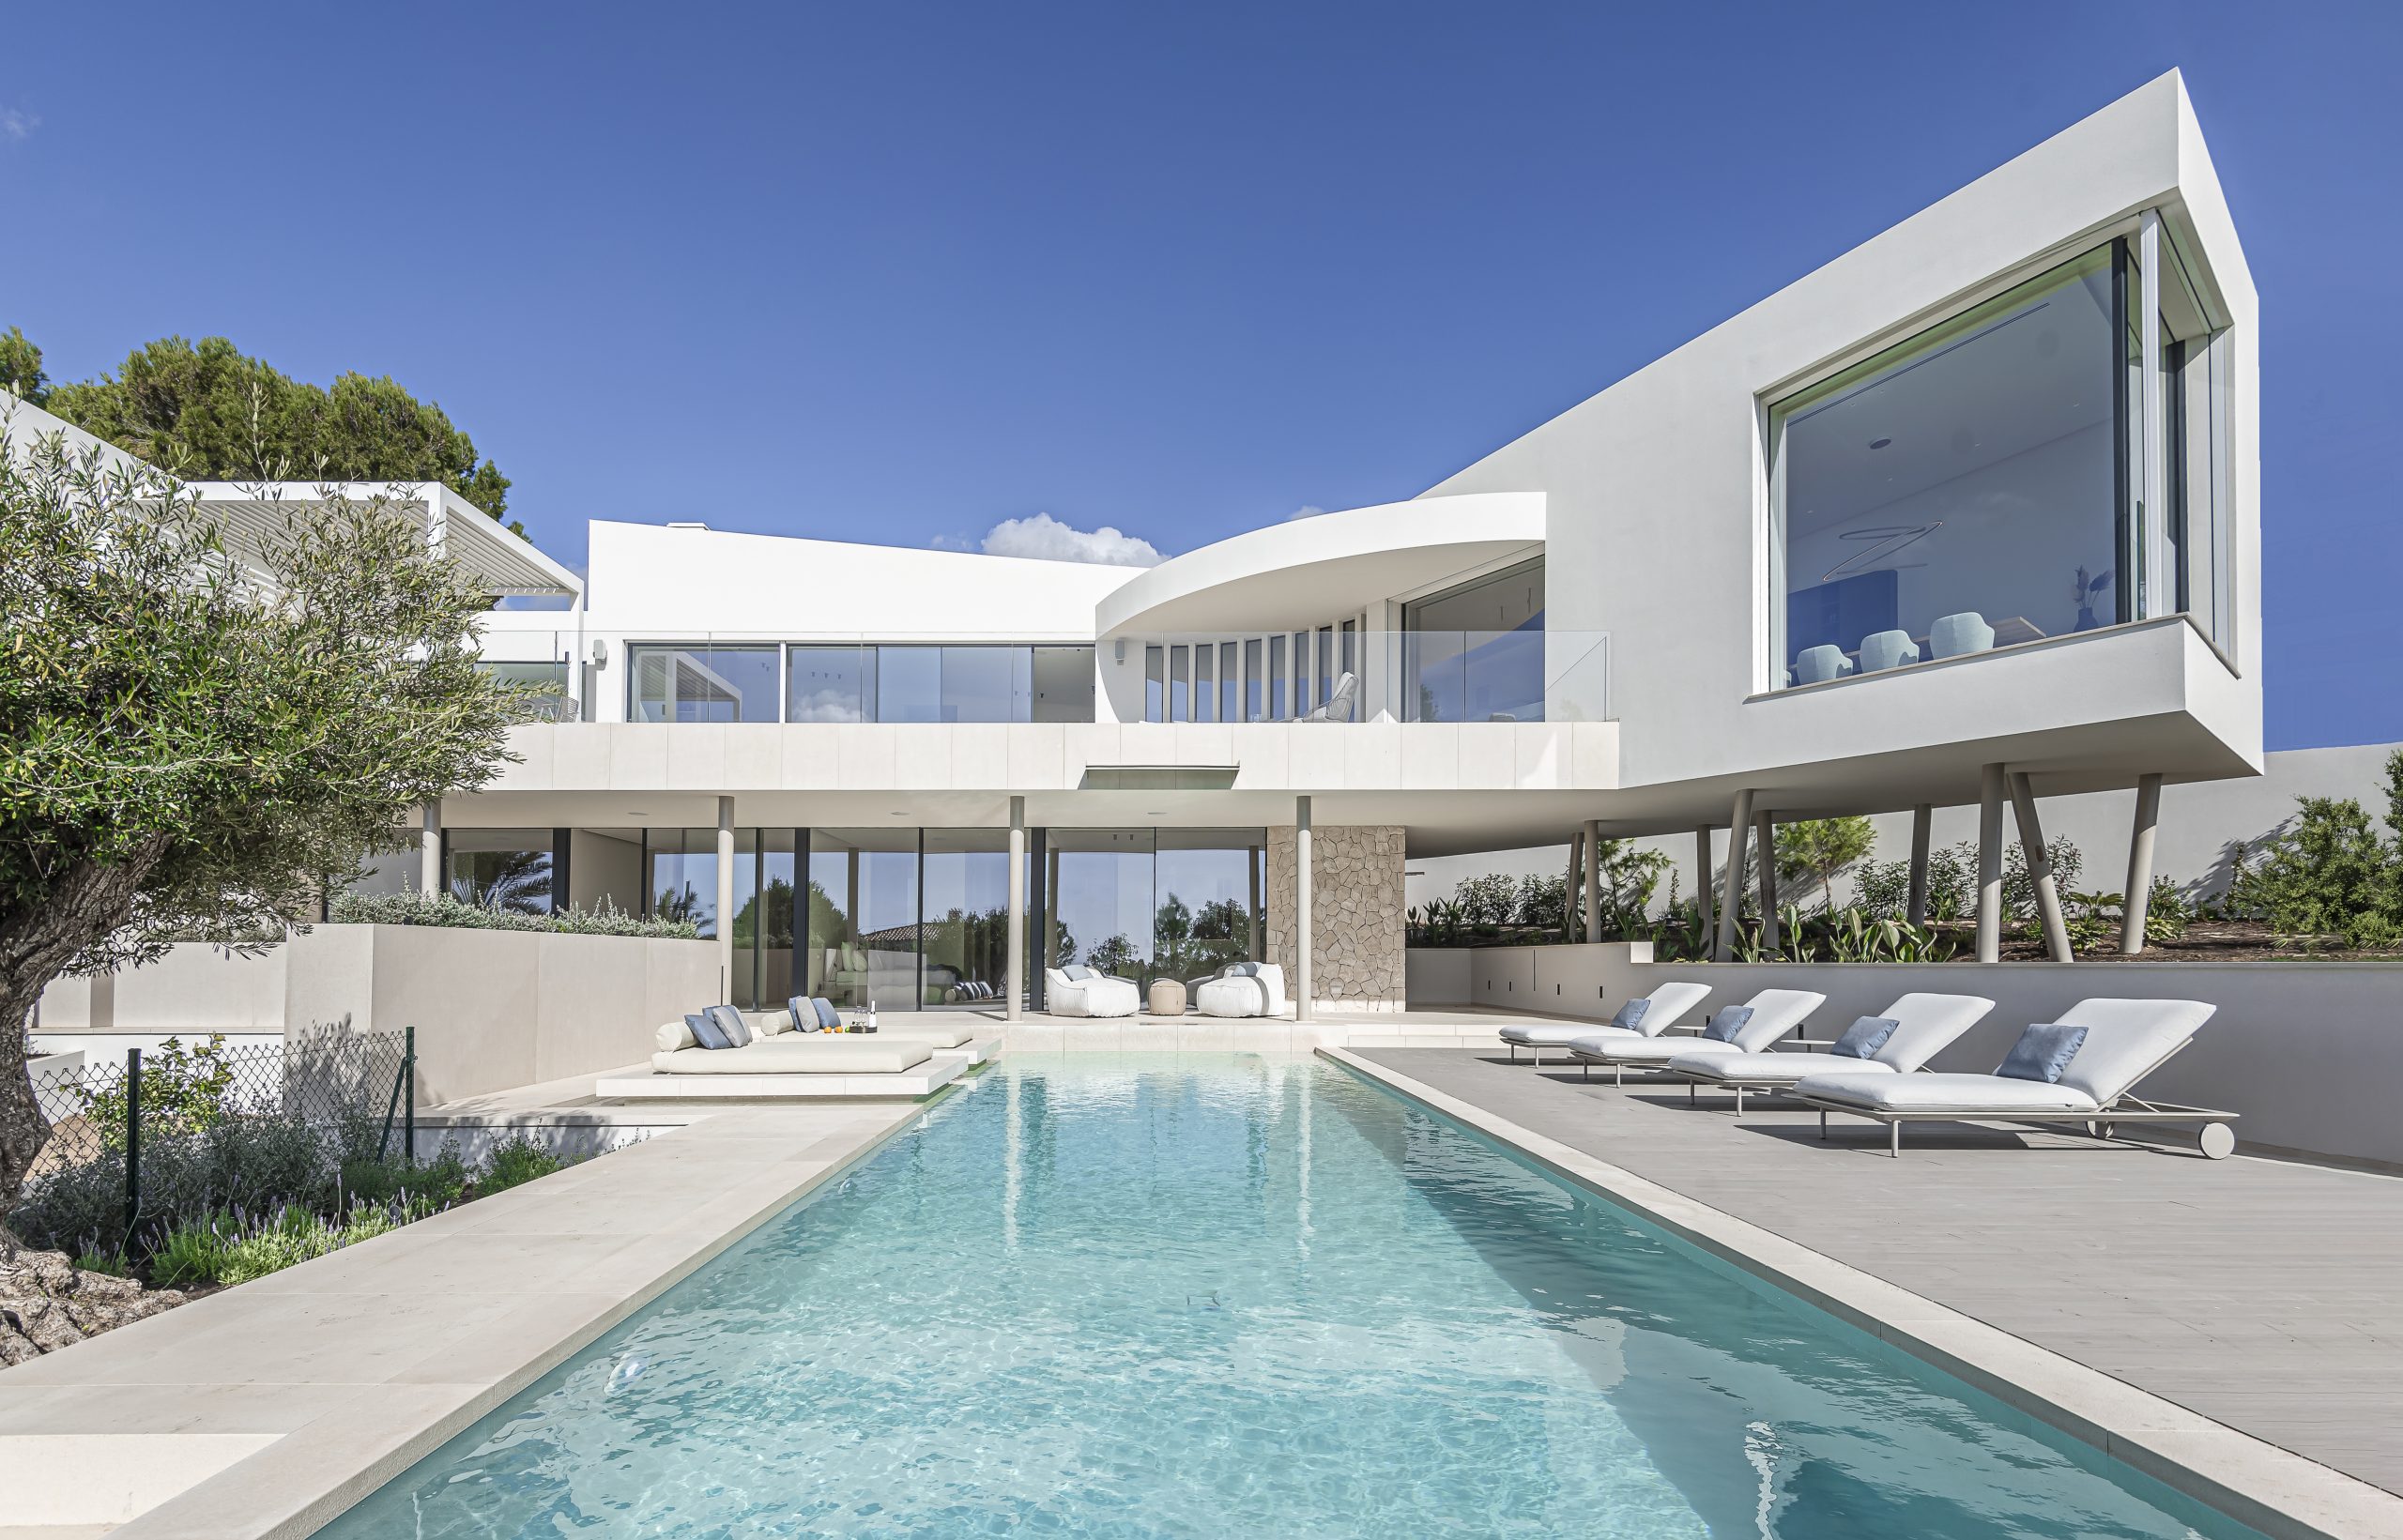 别墅设计,别墅设计案例,Palomino Arquitectos,Alejandro Palomino,极简风格别墅,别墅泳池设计,西班牙,国外别墅设计案例,680㎡